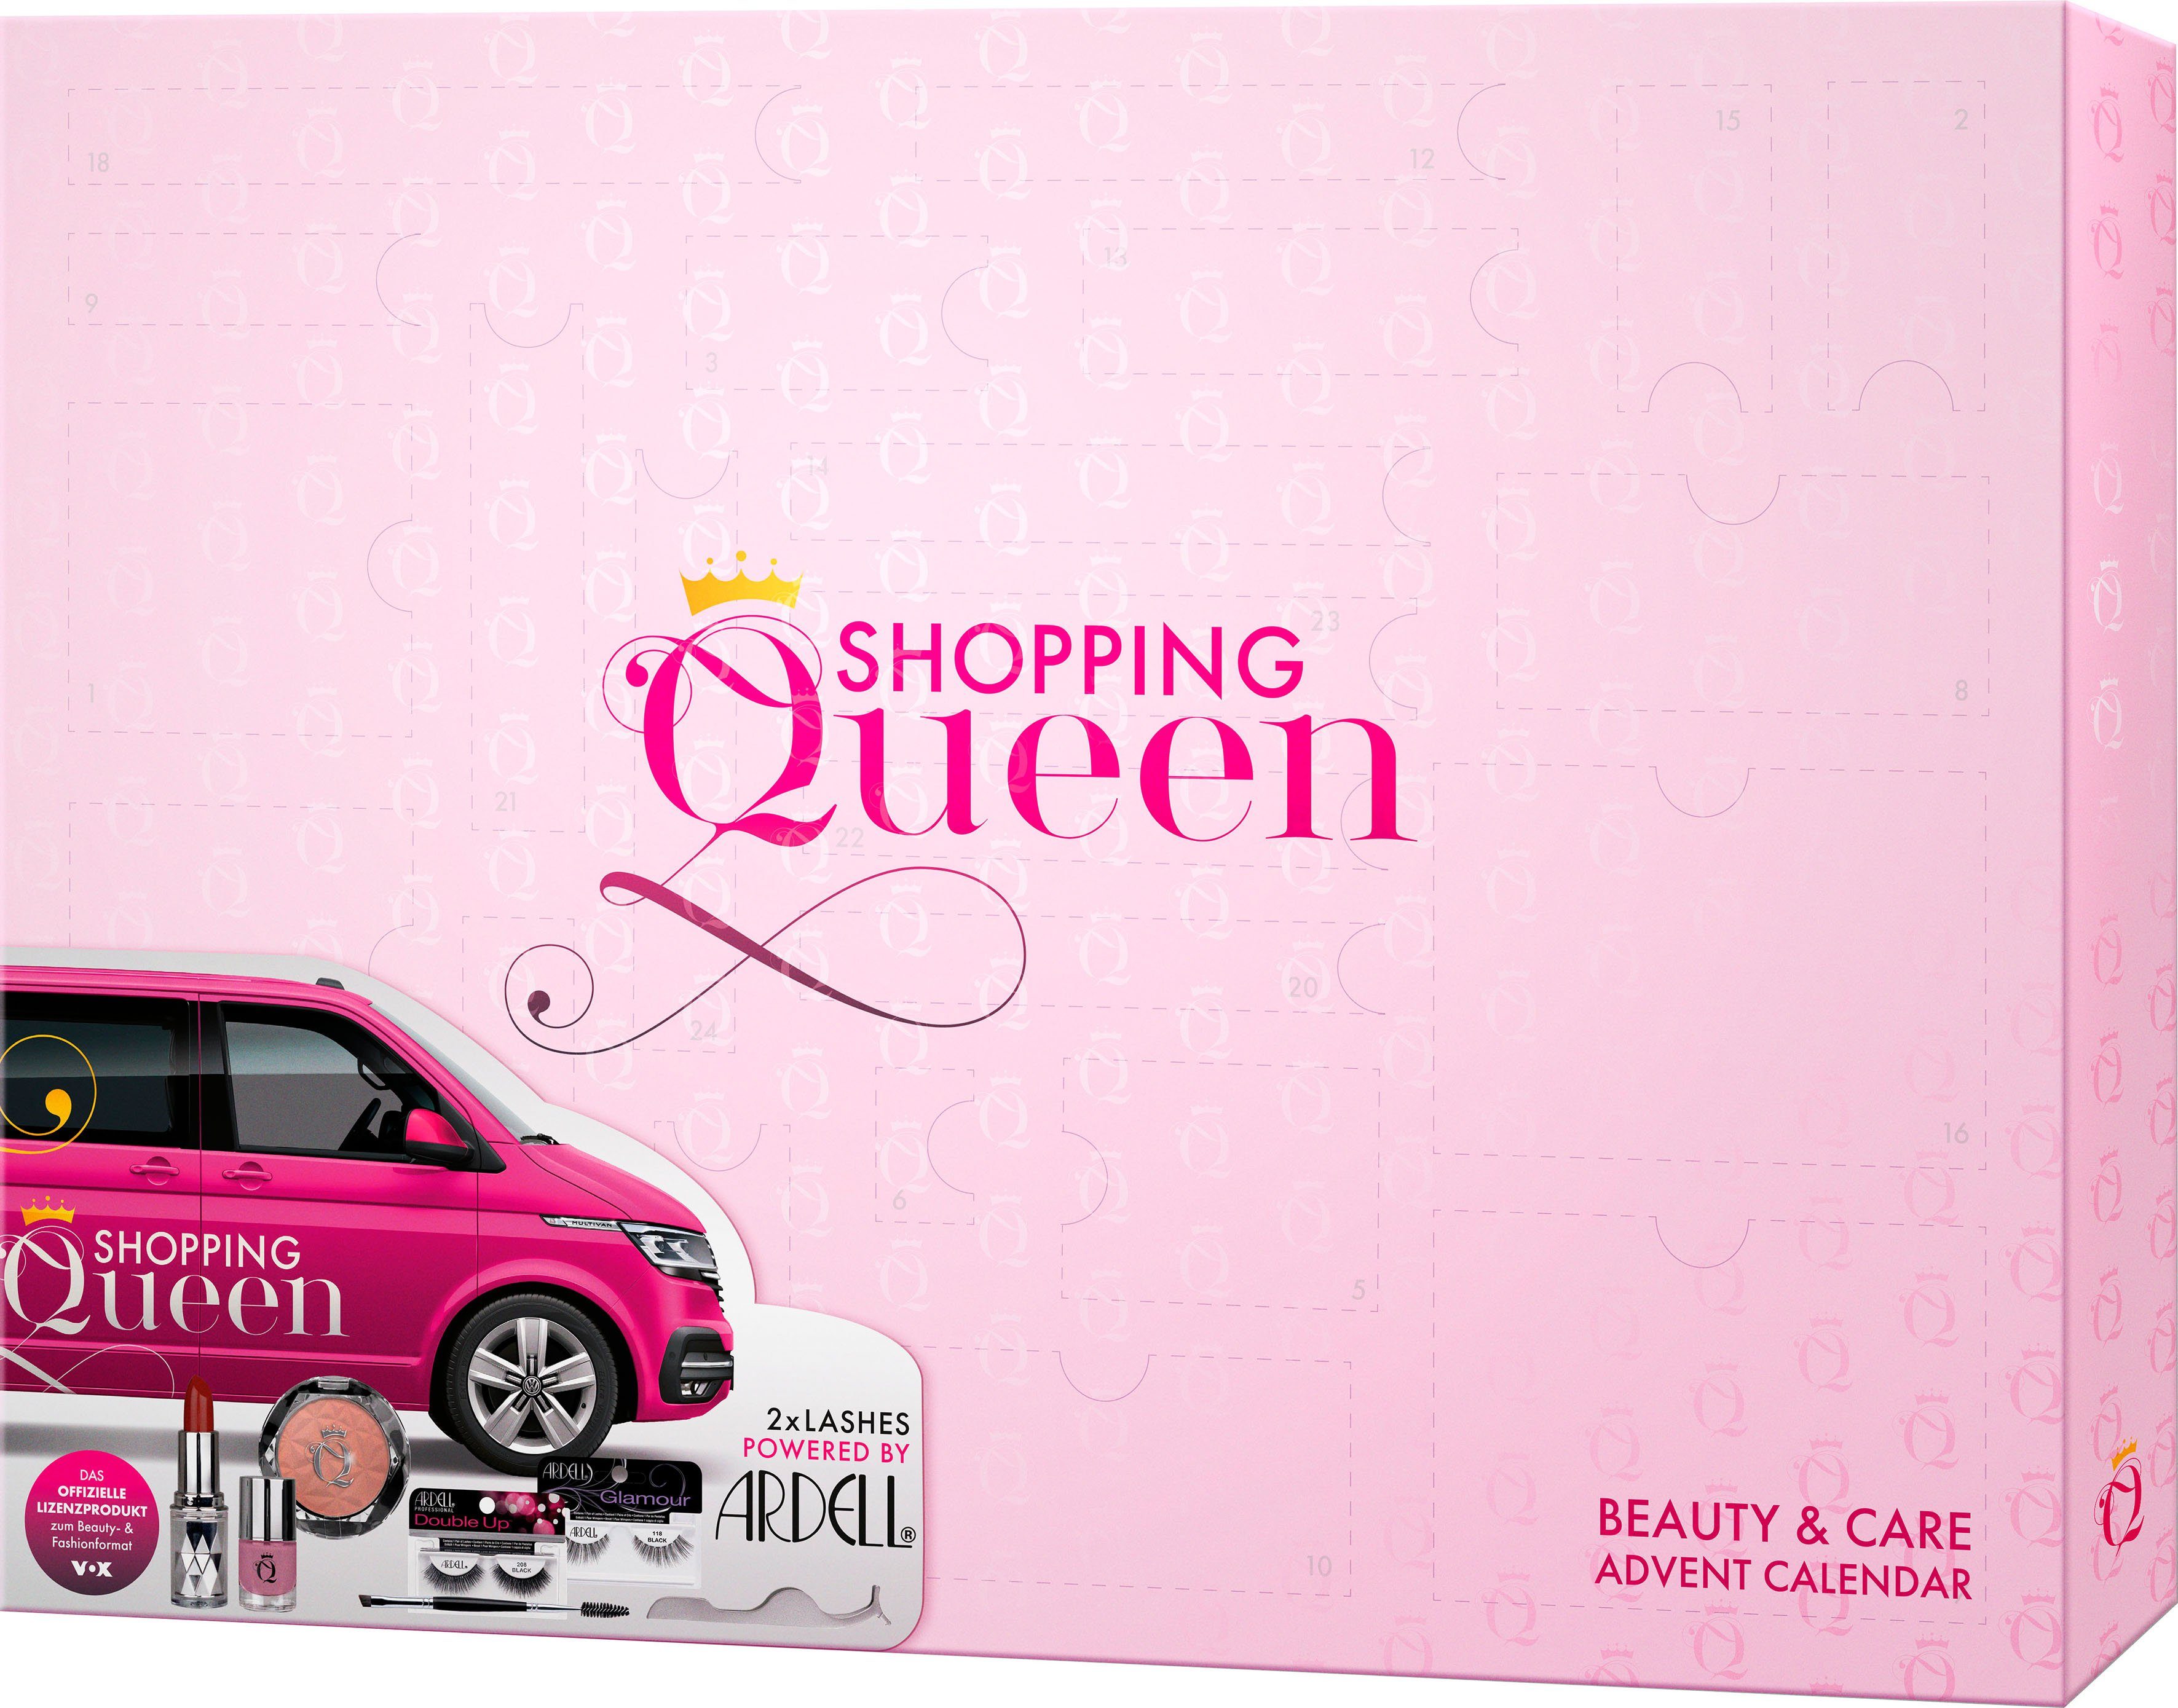 Shopping Queen Adventskalender Shopping Queen ARDELL meets